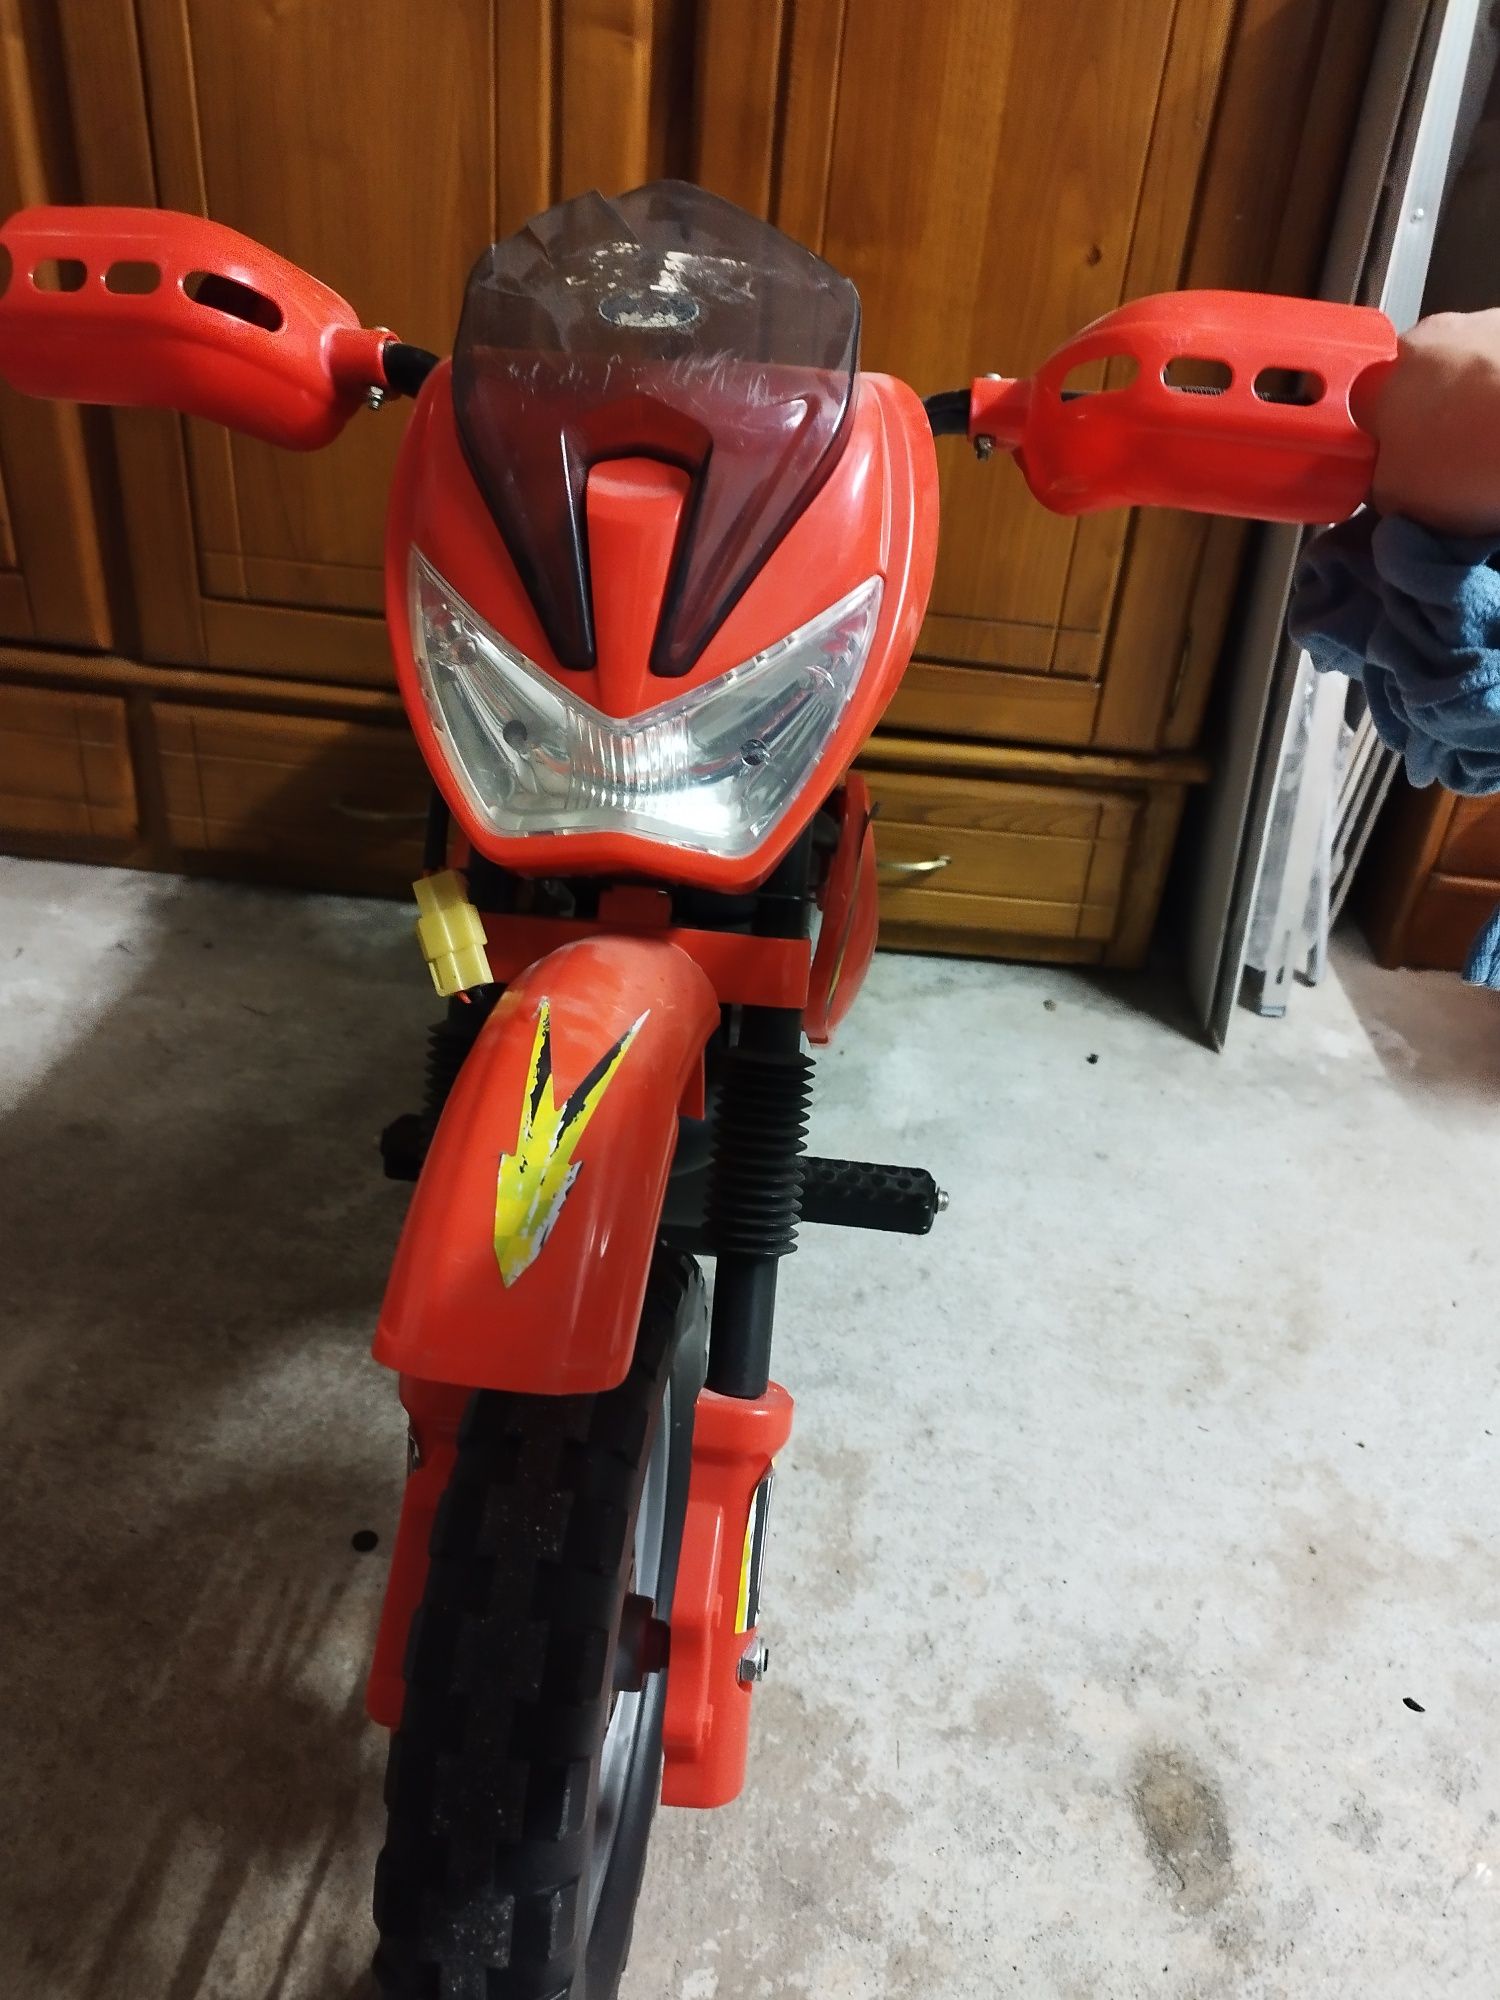 Motocross a bateria (bat danificada)para criança